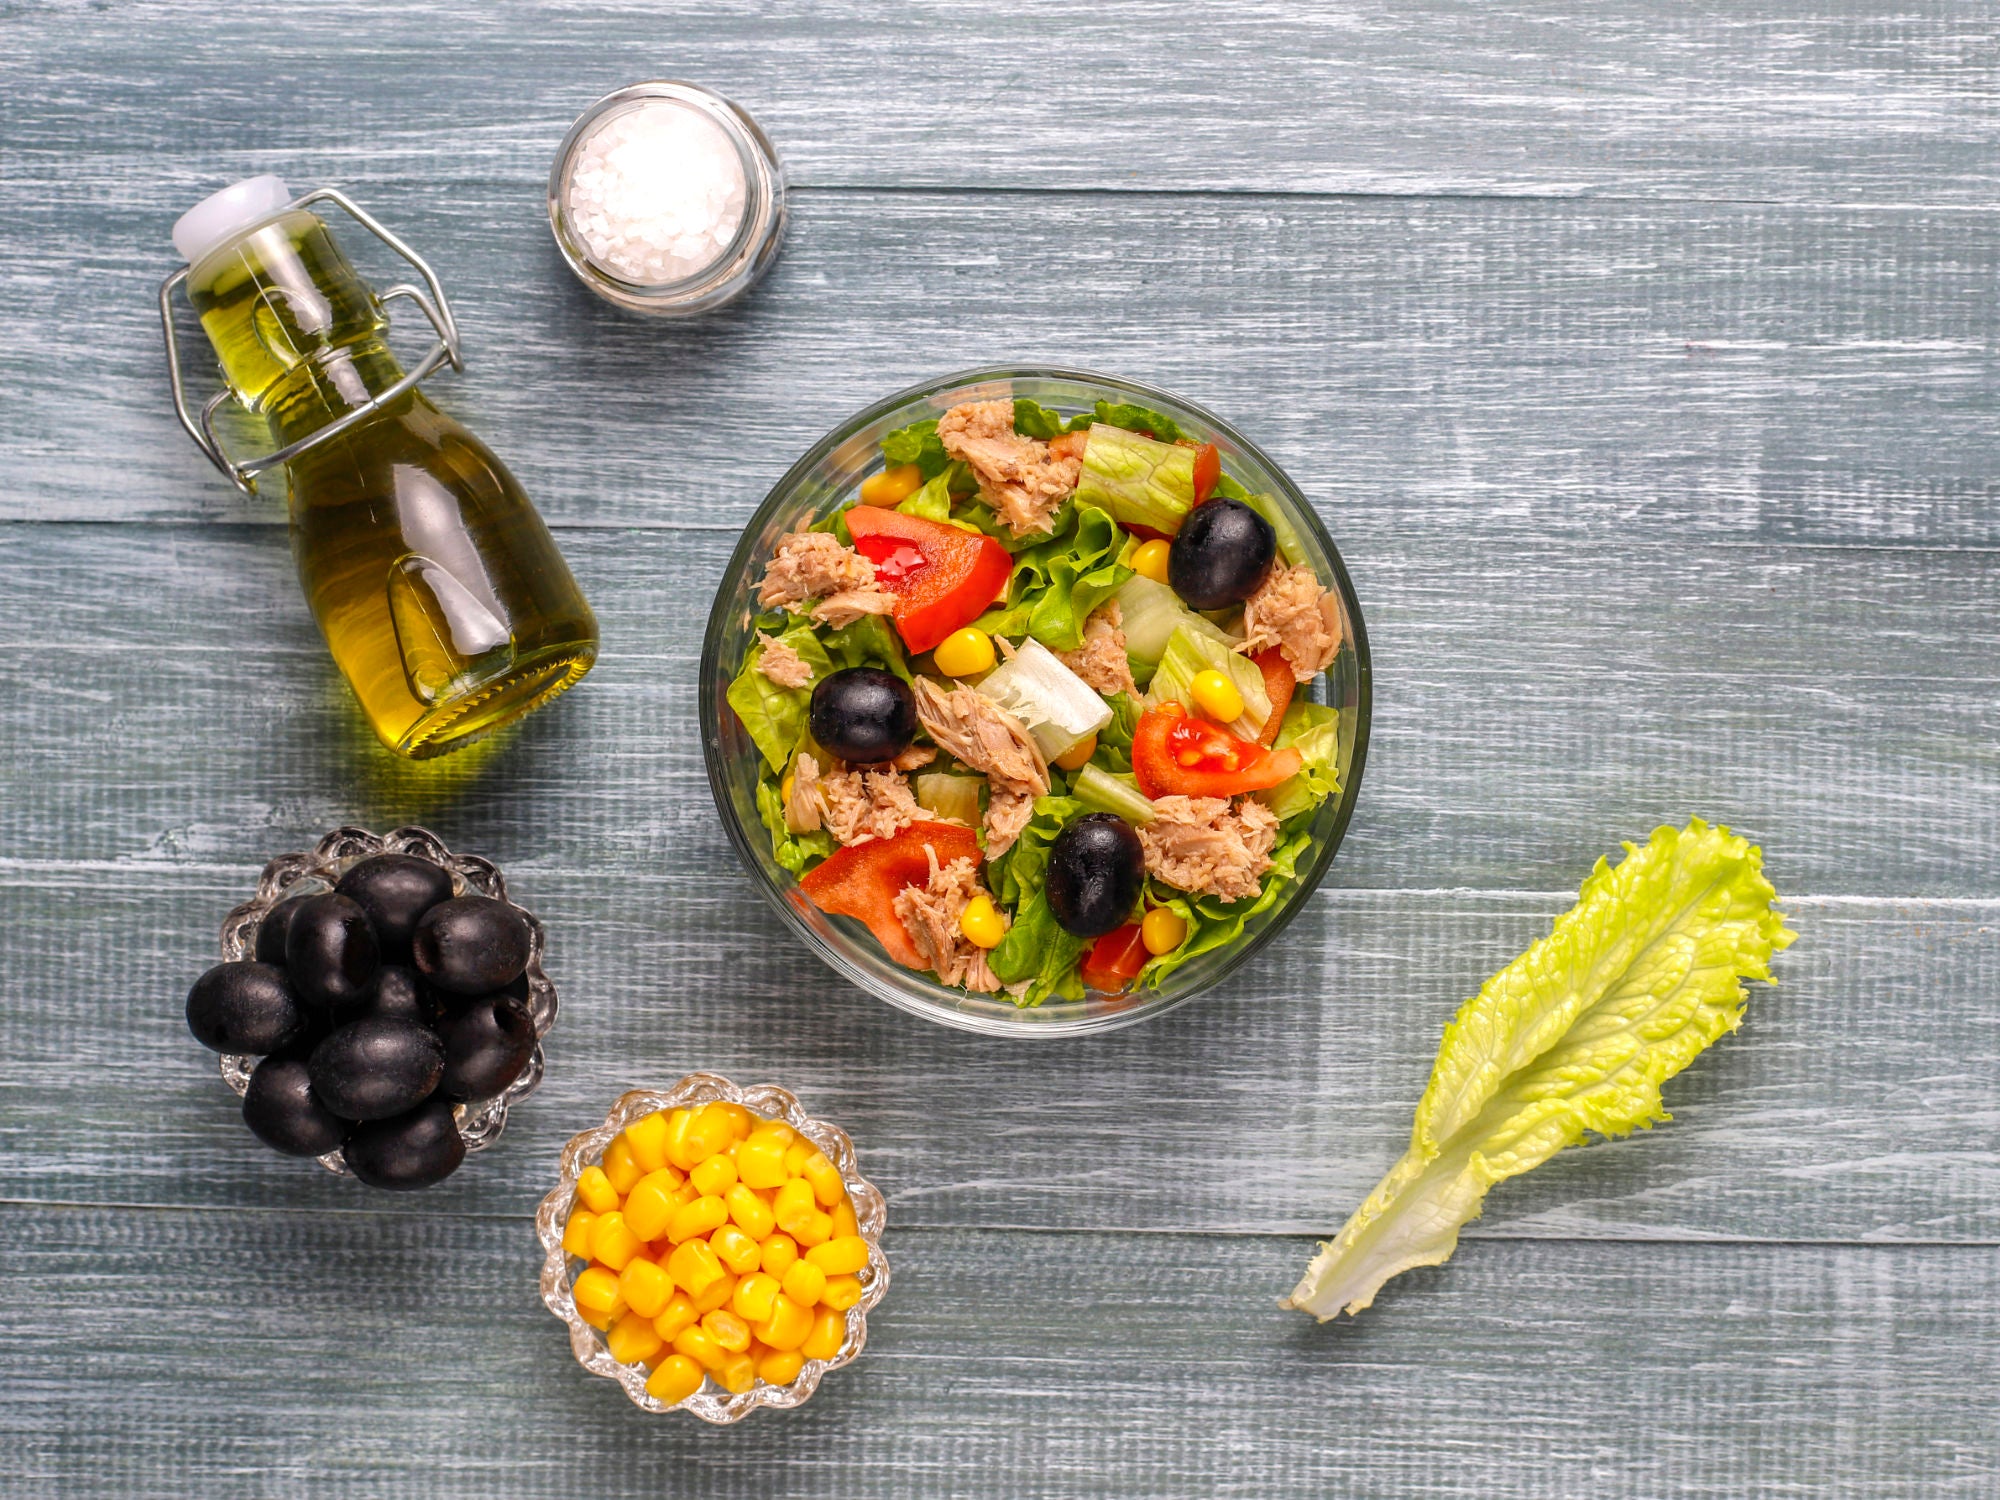 Dieta mediterranea: cosa mangiare e perché è considerata salutare